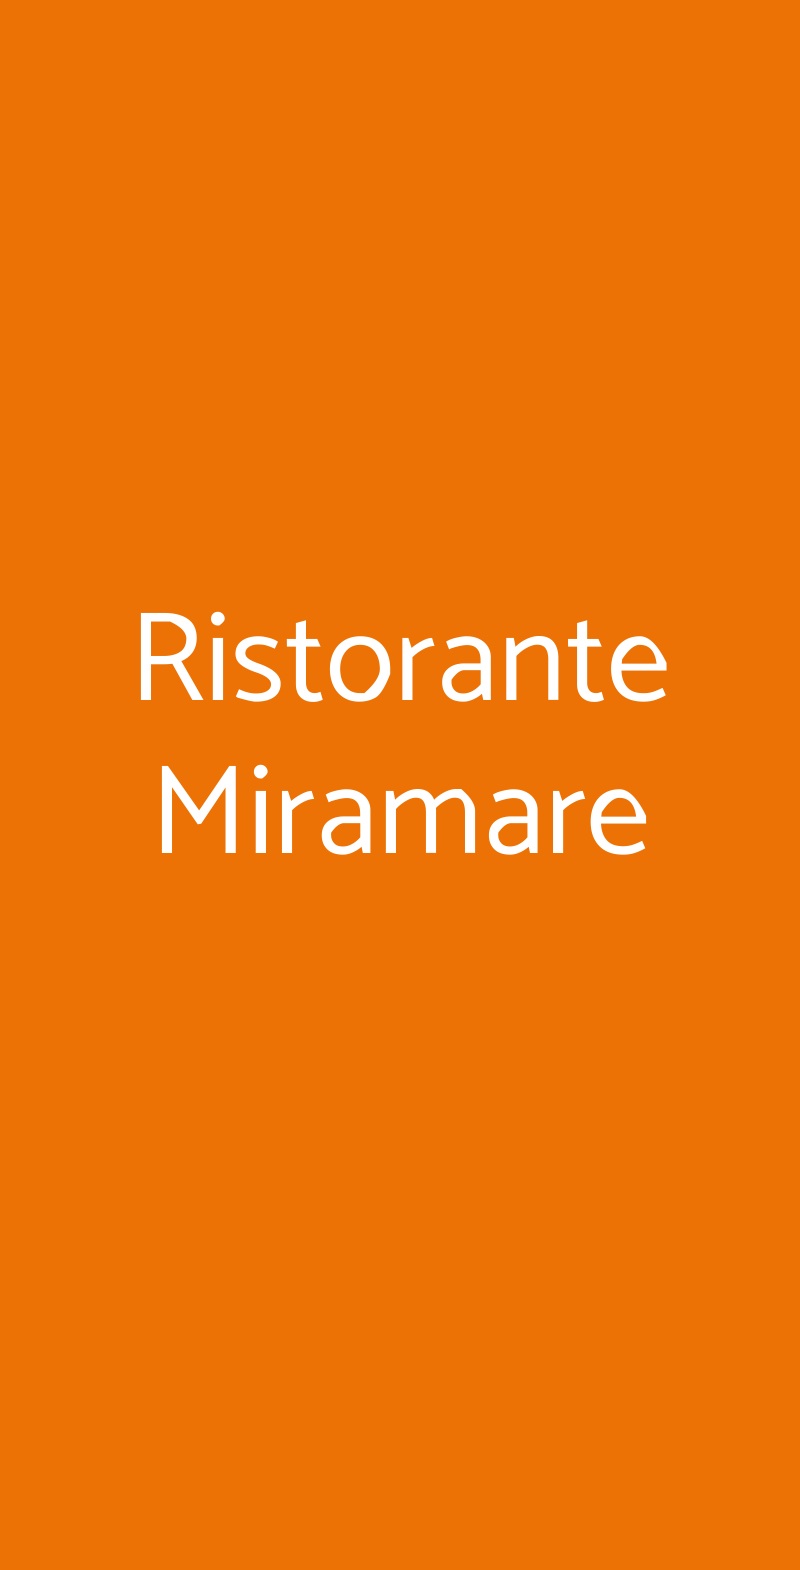 Ristorante Miramare Torre Del Greco menù 1 pagina